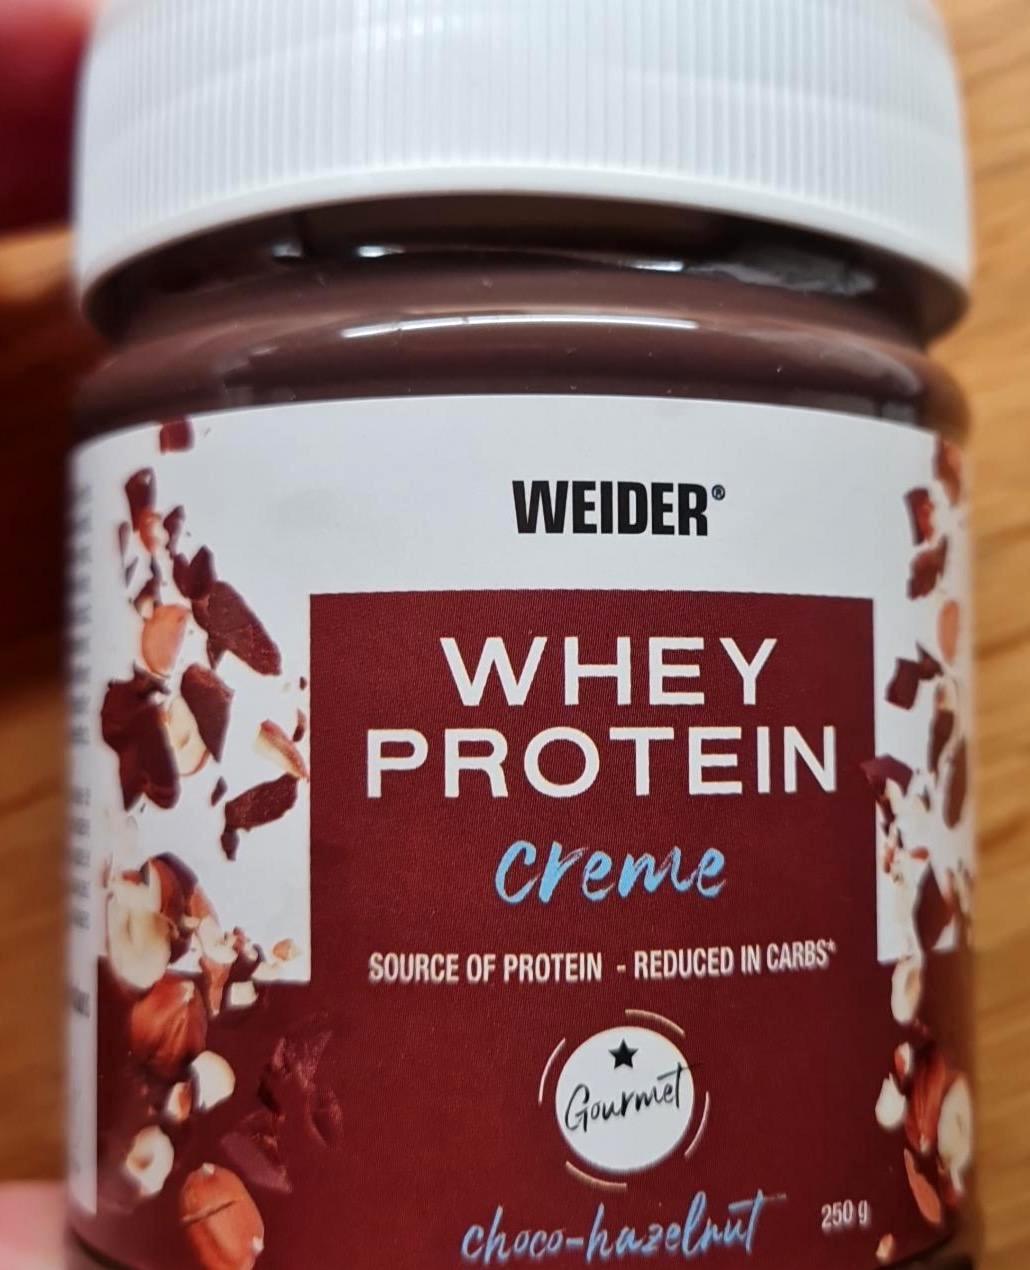 Képek - Whey protein creme Choco-hazelnut Weider